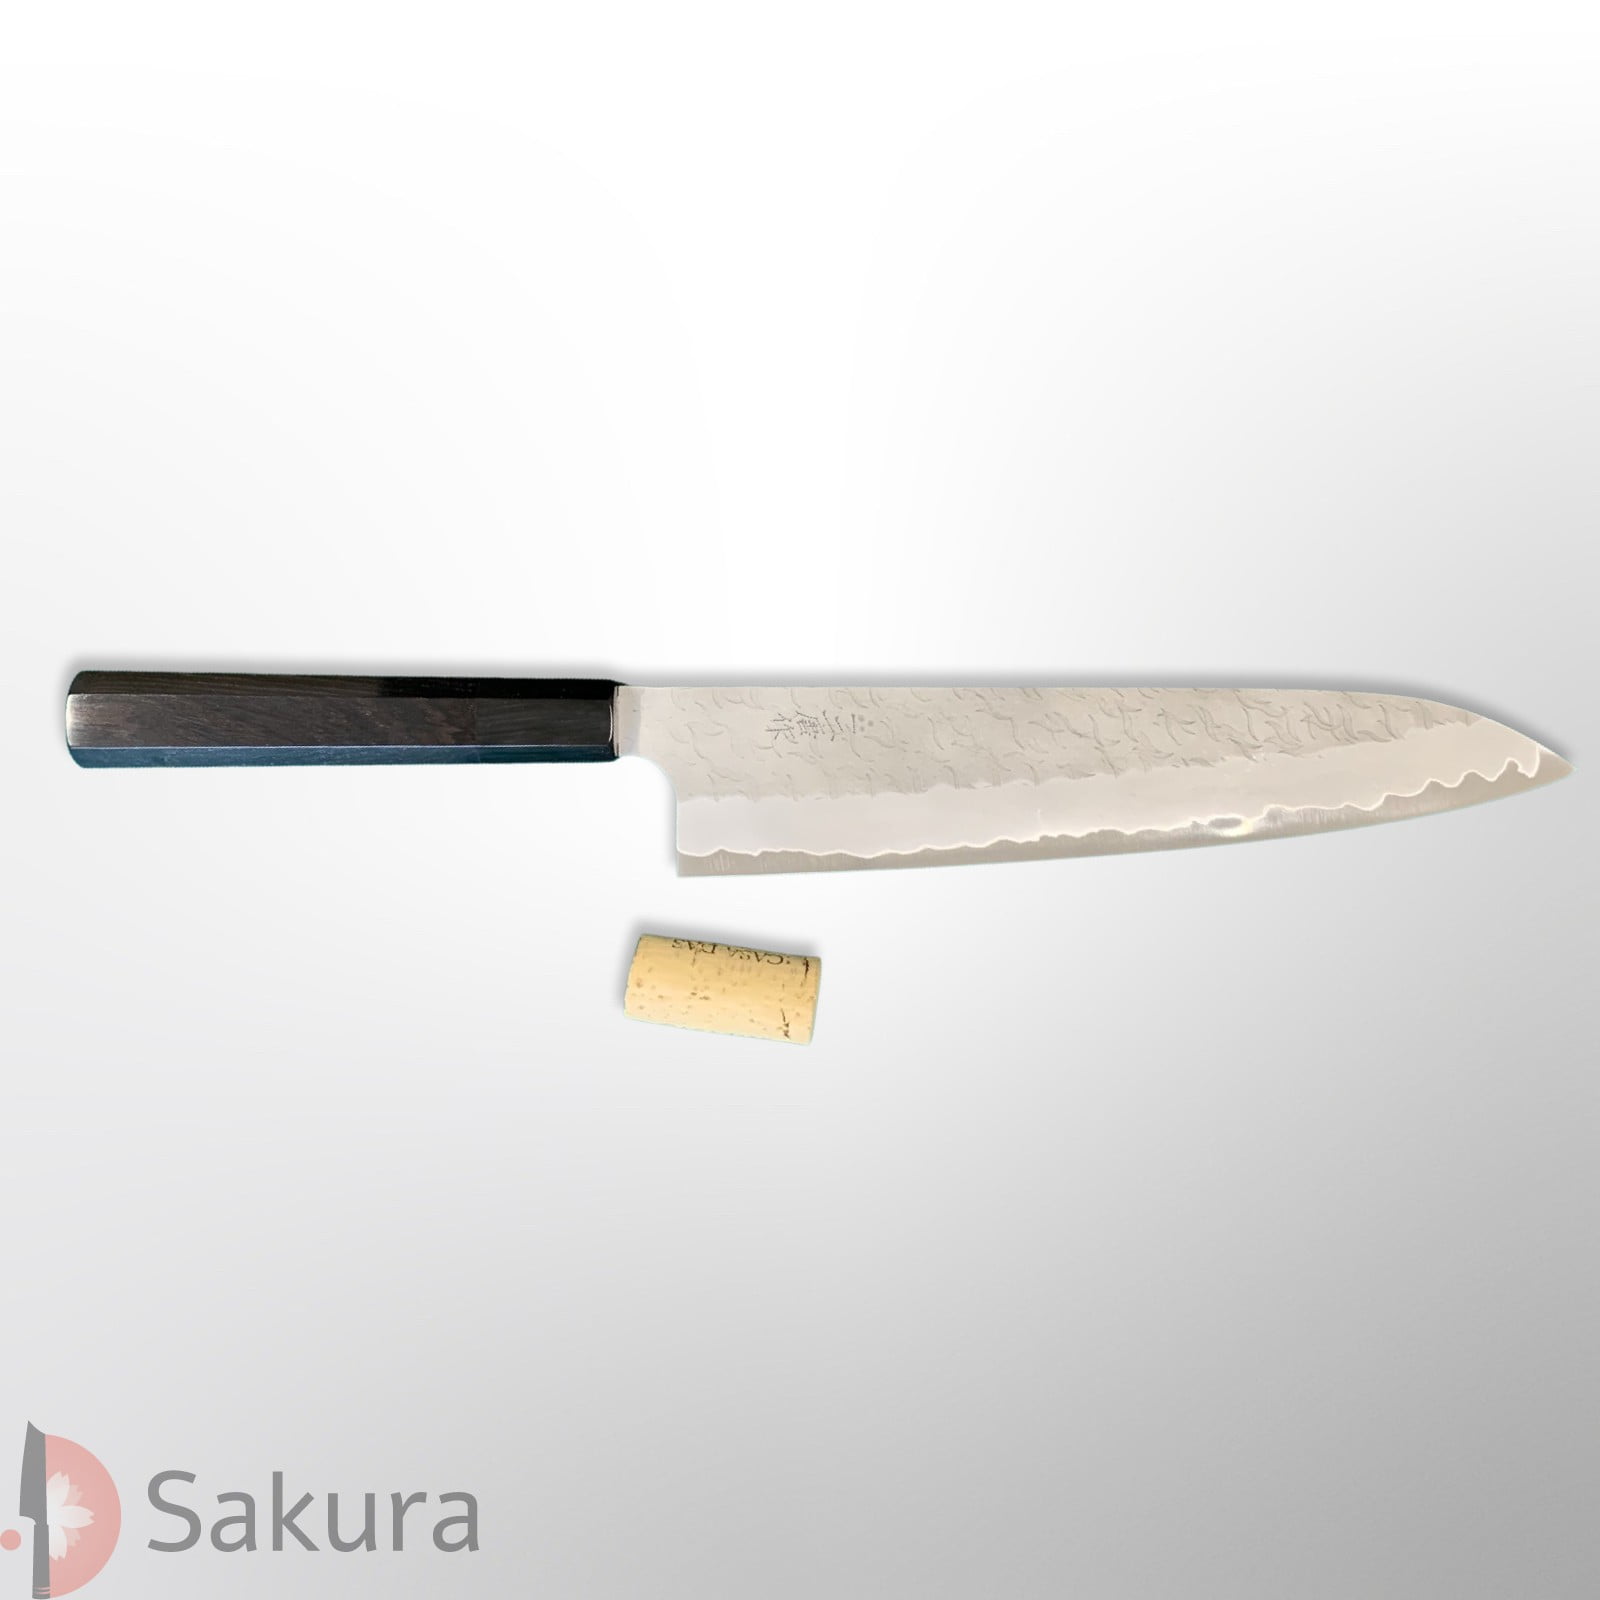 סכין שף רב-תכליתית גִּיוּטוֹ 240מ״מ מחושלת בעבודת יד 3 שכבות: פלדת פחמן יפנית מתקדמת Aogami Super גימור מט מלוטש עם ריקוע פטיש ניגארה יפן SKNIGAASMTGYU2416